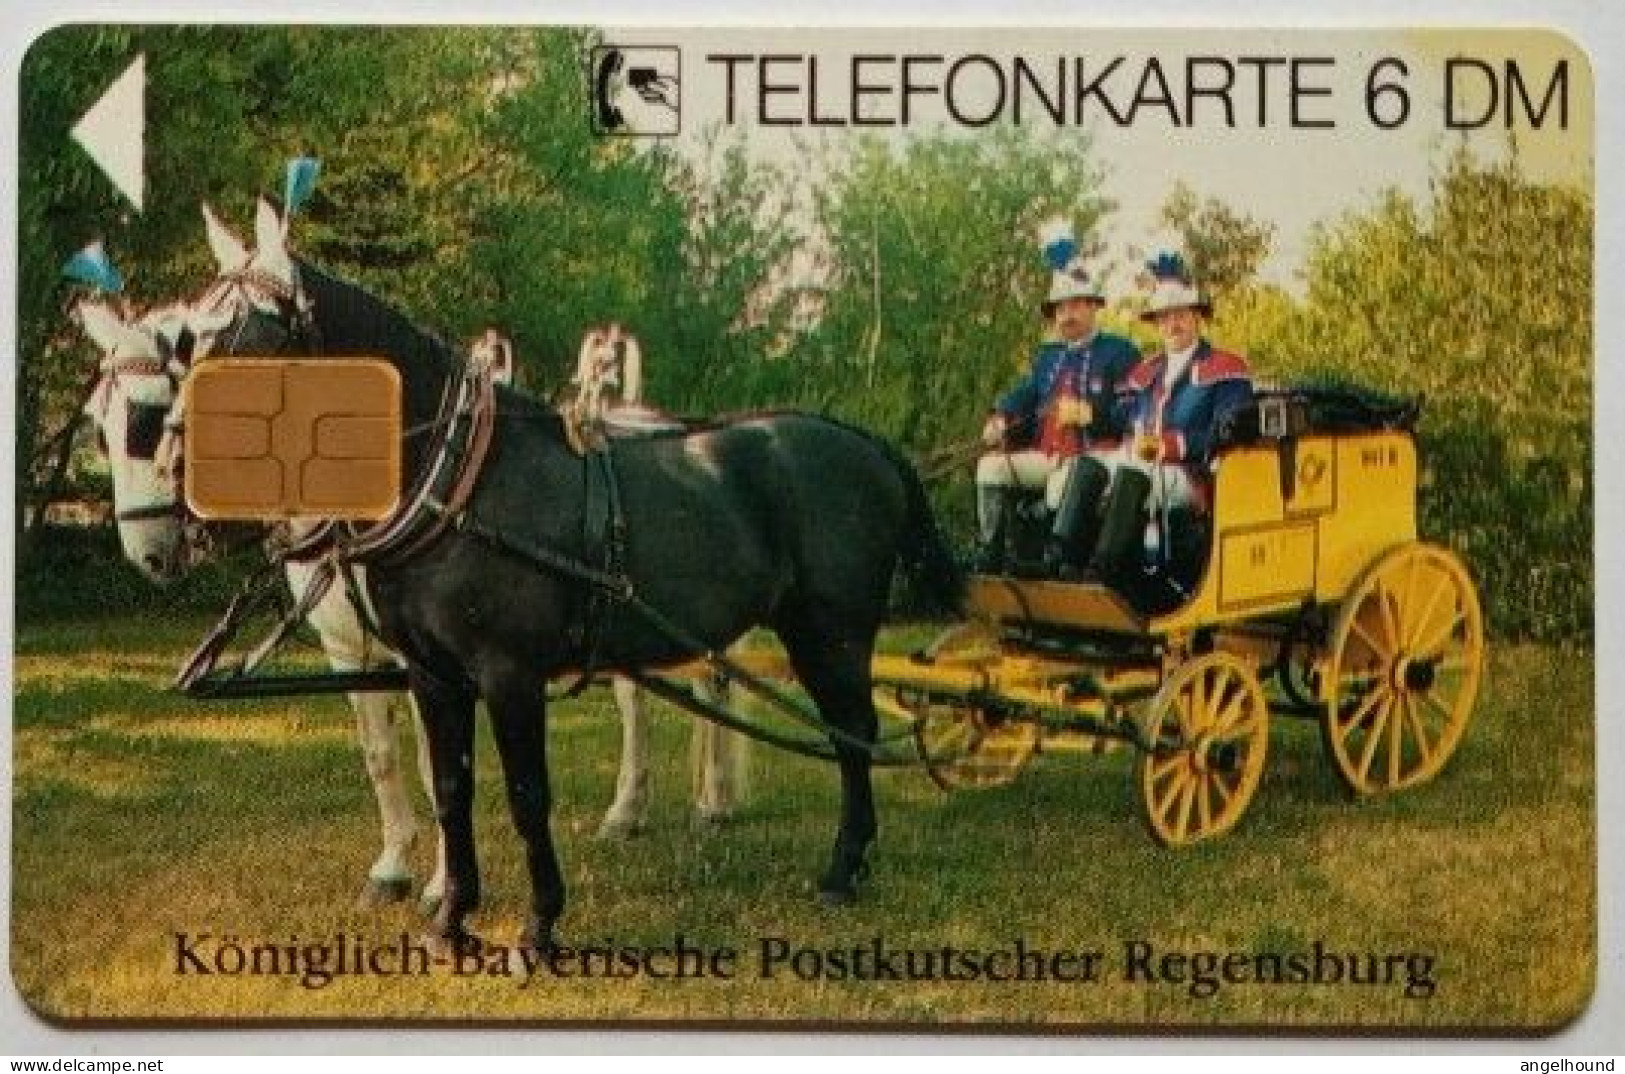 Germany 6DM MINT K 018 03.95 4,200 Mintage - Koniglische - Bayerische Postkutscher Regensburg - K-Series: Kundenserie